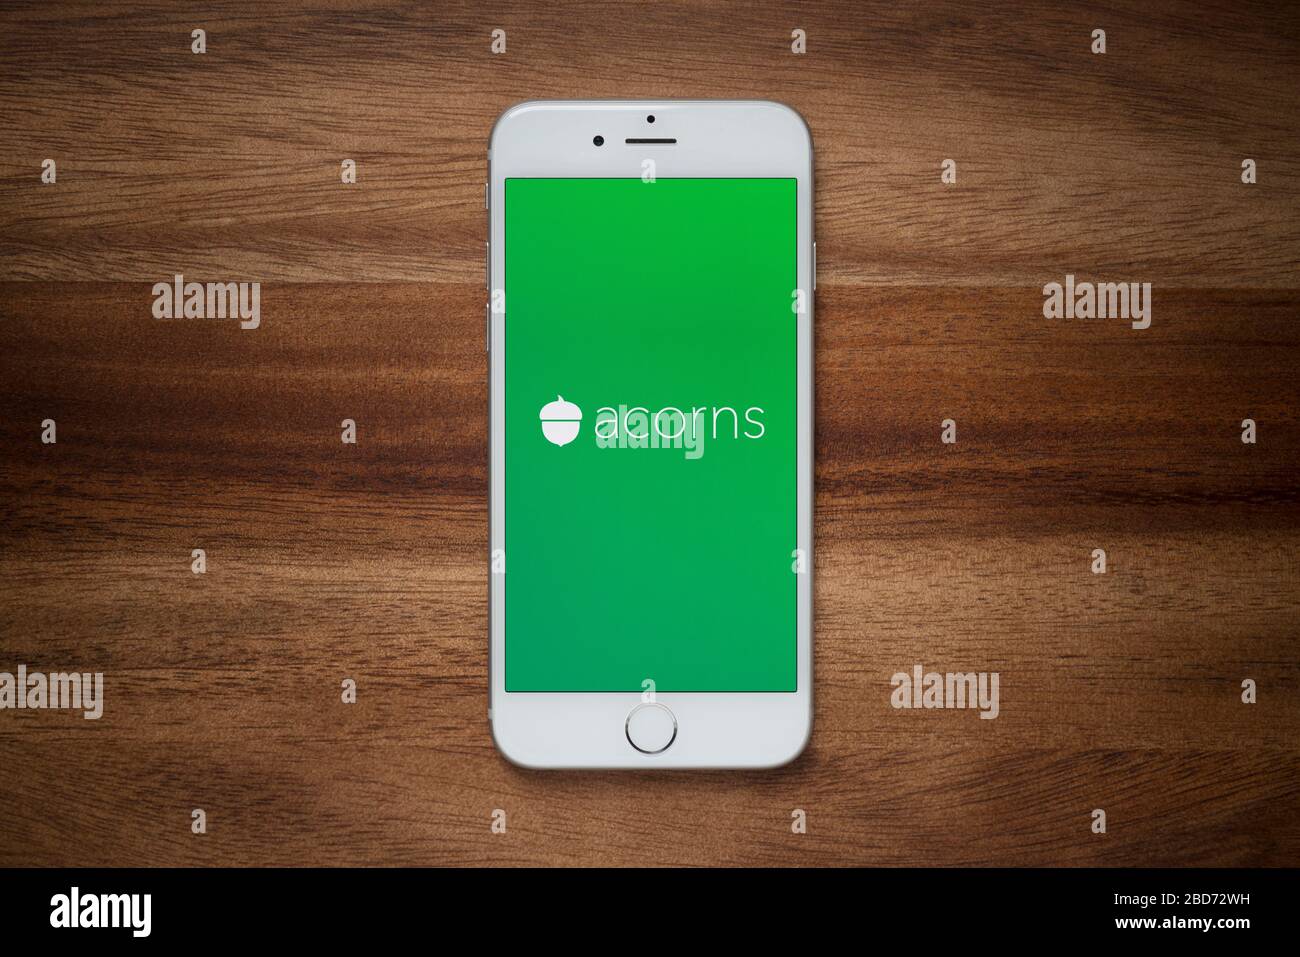 Ein iPhone mit dem Logo der Firma Acorns ruht auf einem einfachen Holztisch (nur für redaktionelle Zwecke). Stockfoto